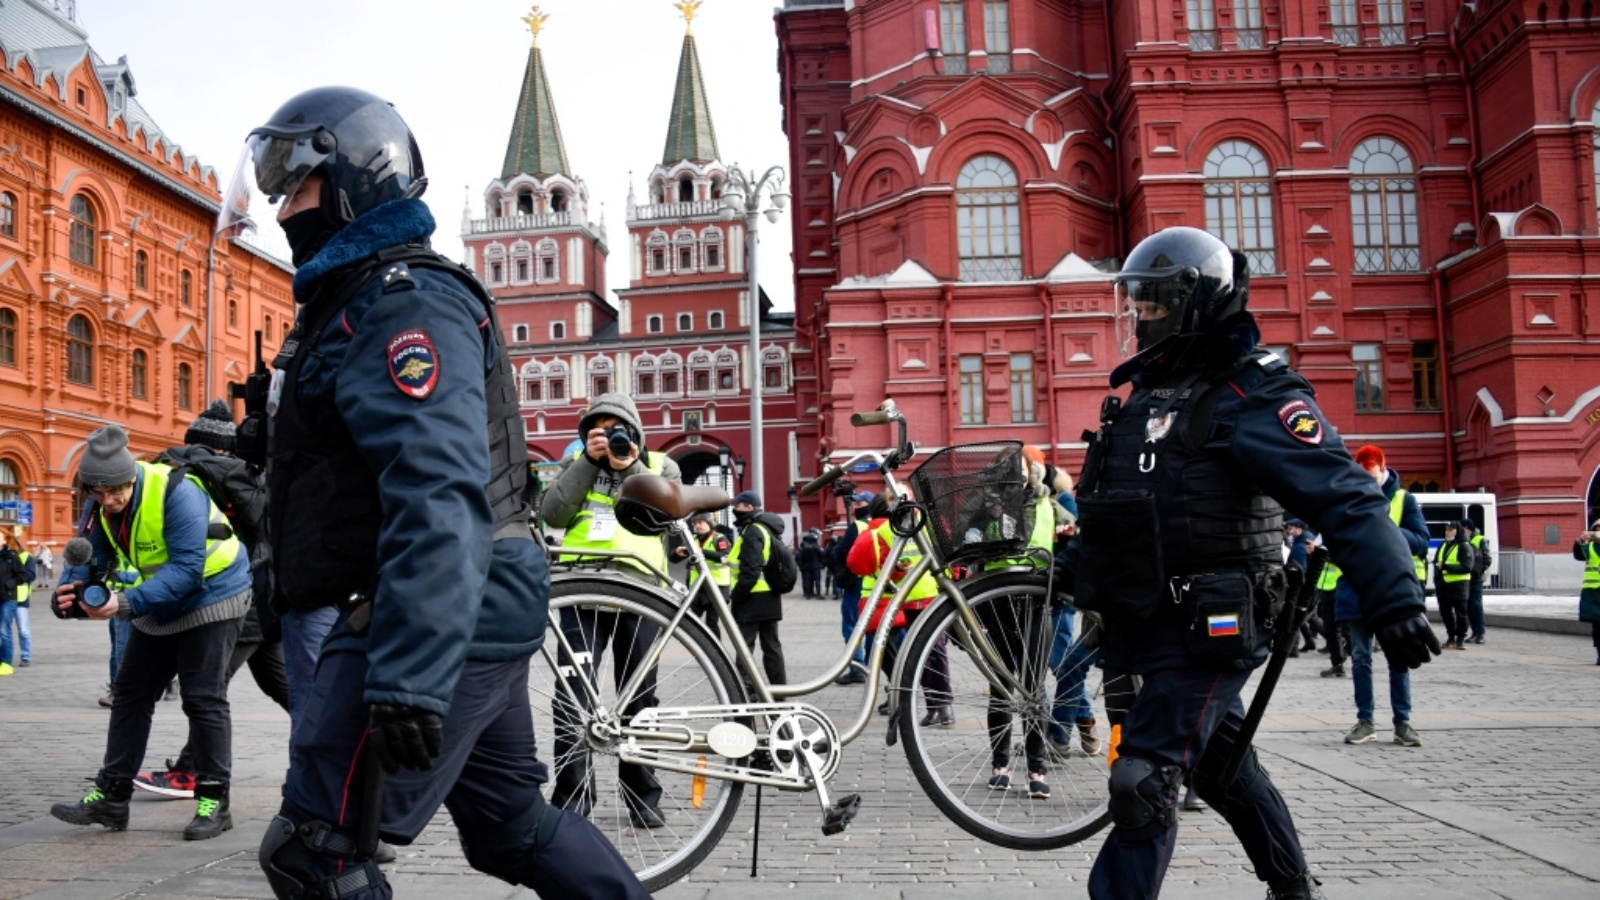 ضباط شرطة خلال احتجاج على العمل العسكري الروسي في أوكرانيا ، في موسكو في 13 مارس 2022